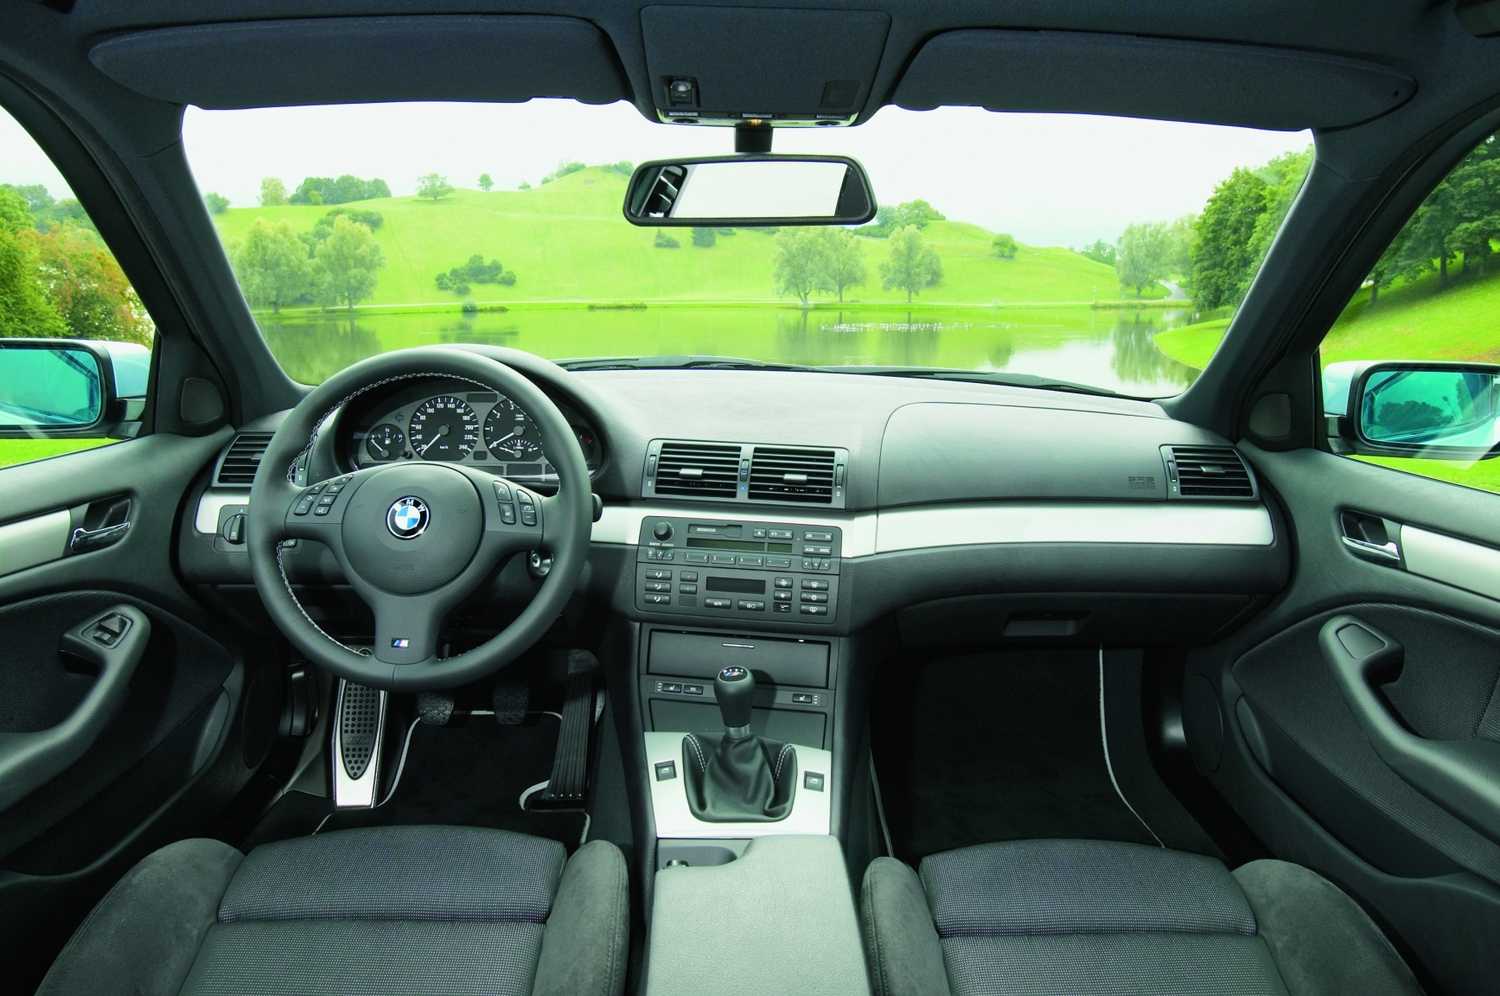 Технические характеристики BMW 330i 2002-2005 в автокаталоге CarExpertru Размеры и масса BMW 330i 2002-2005 Клиренс BMW 3-series Мощность двигателя BMW 330i 2002-2005 Расход топлива BMW 330i 2002-2005 Максимальная скорость BMW 330i 2002-2005 Подвеска BMW